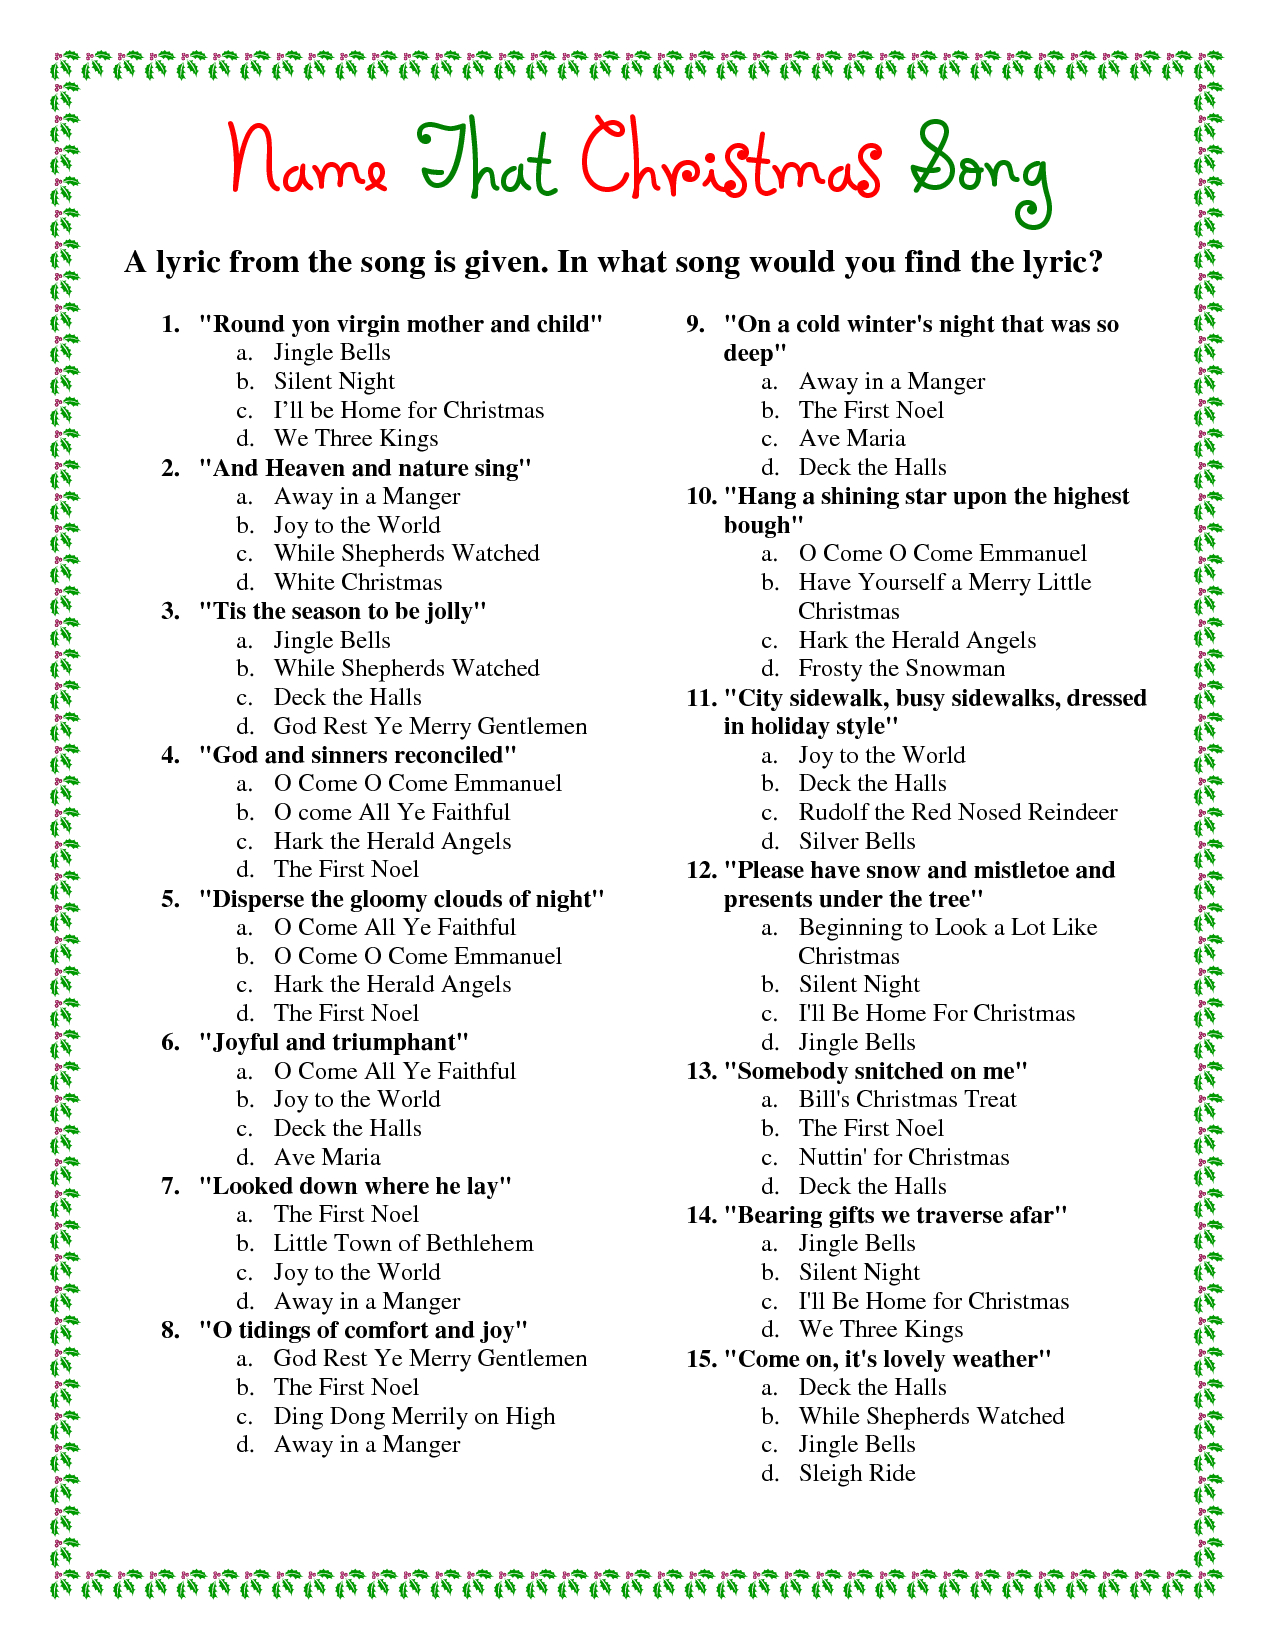 Printable+Christmas+Song+Trivia | Christmas | Christmas Trivia - Free Christmas Picture Quiz Questions And Answers Printable